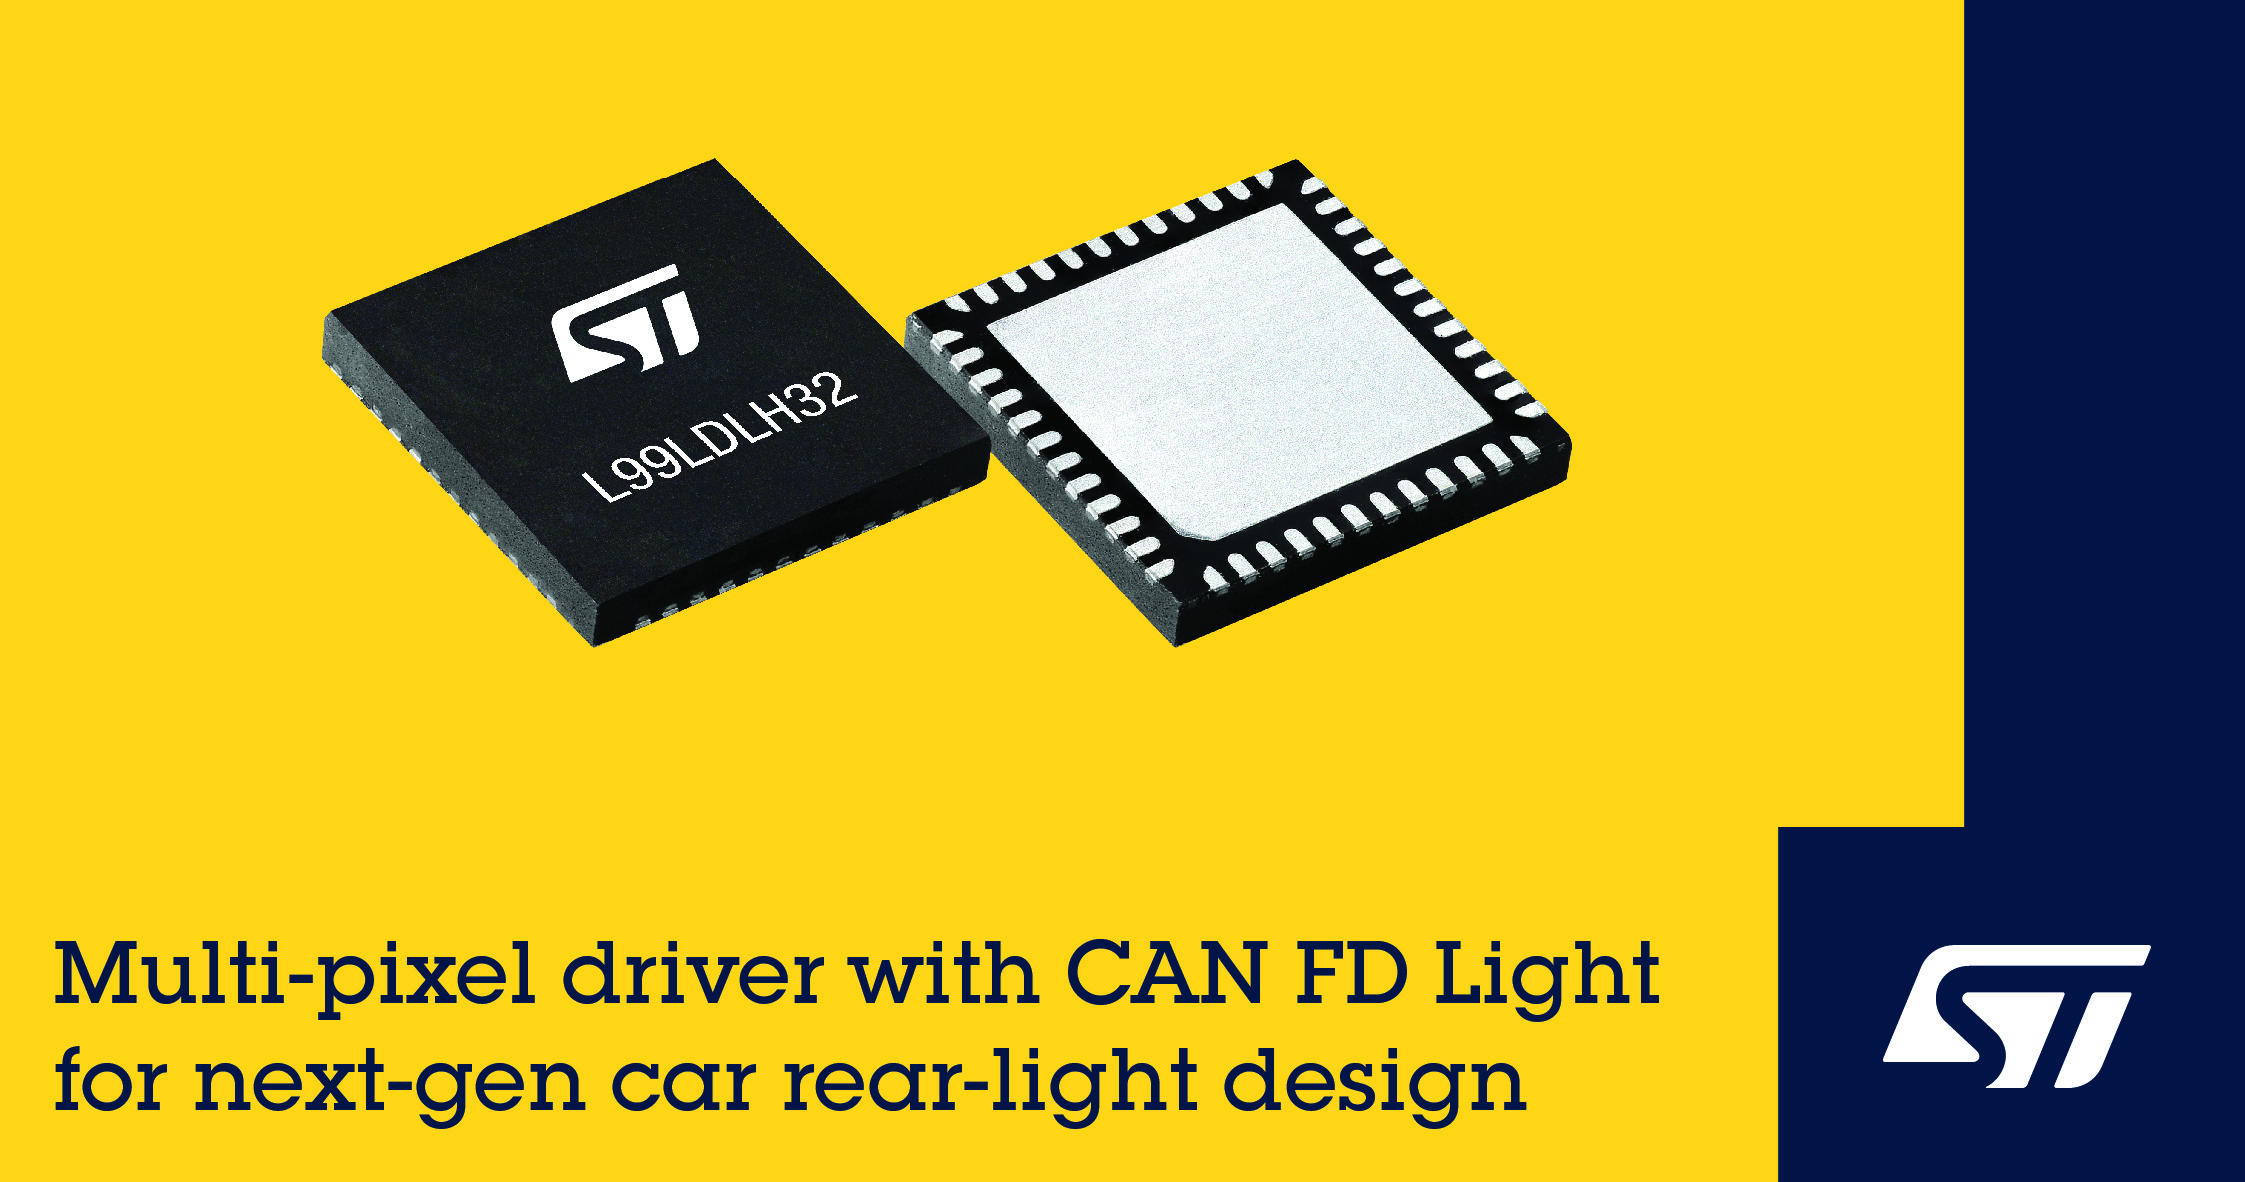 意法半导体CAN FD Light多像素驱动器助力下一代汽车照明设计